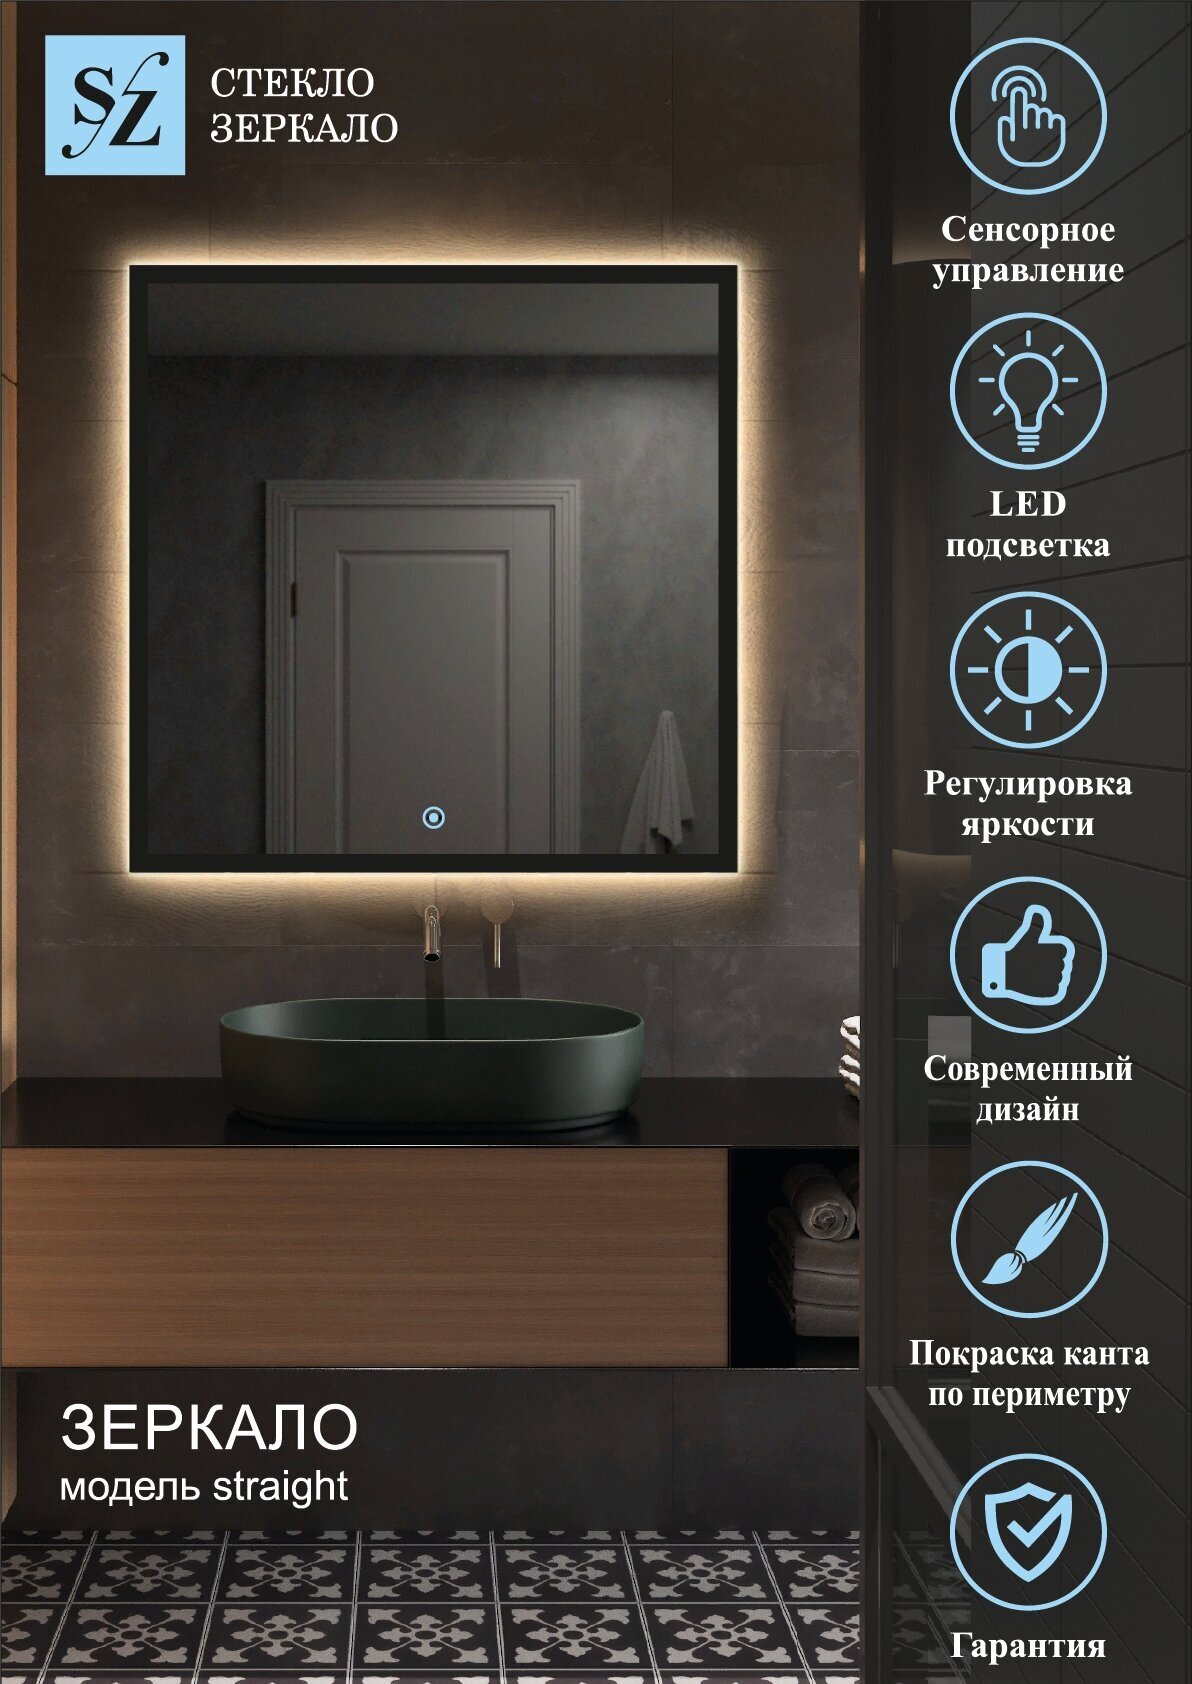 Зеркало интерьерное с подсветкой парящее прямоугольное 60*70см для ванной сенсорное управление + покраска по периметру